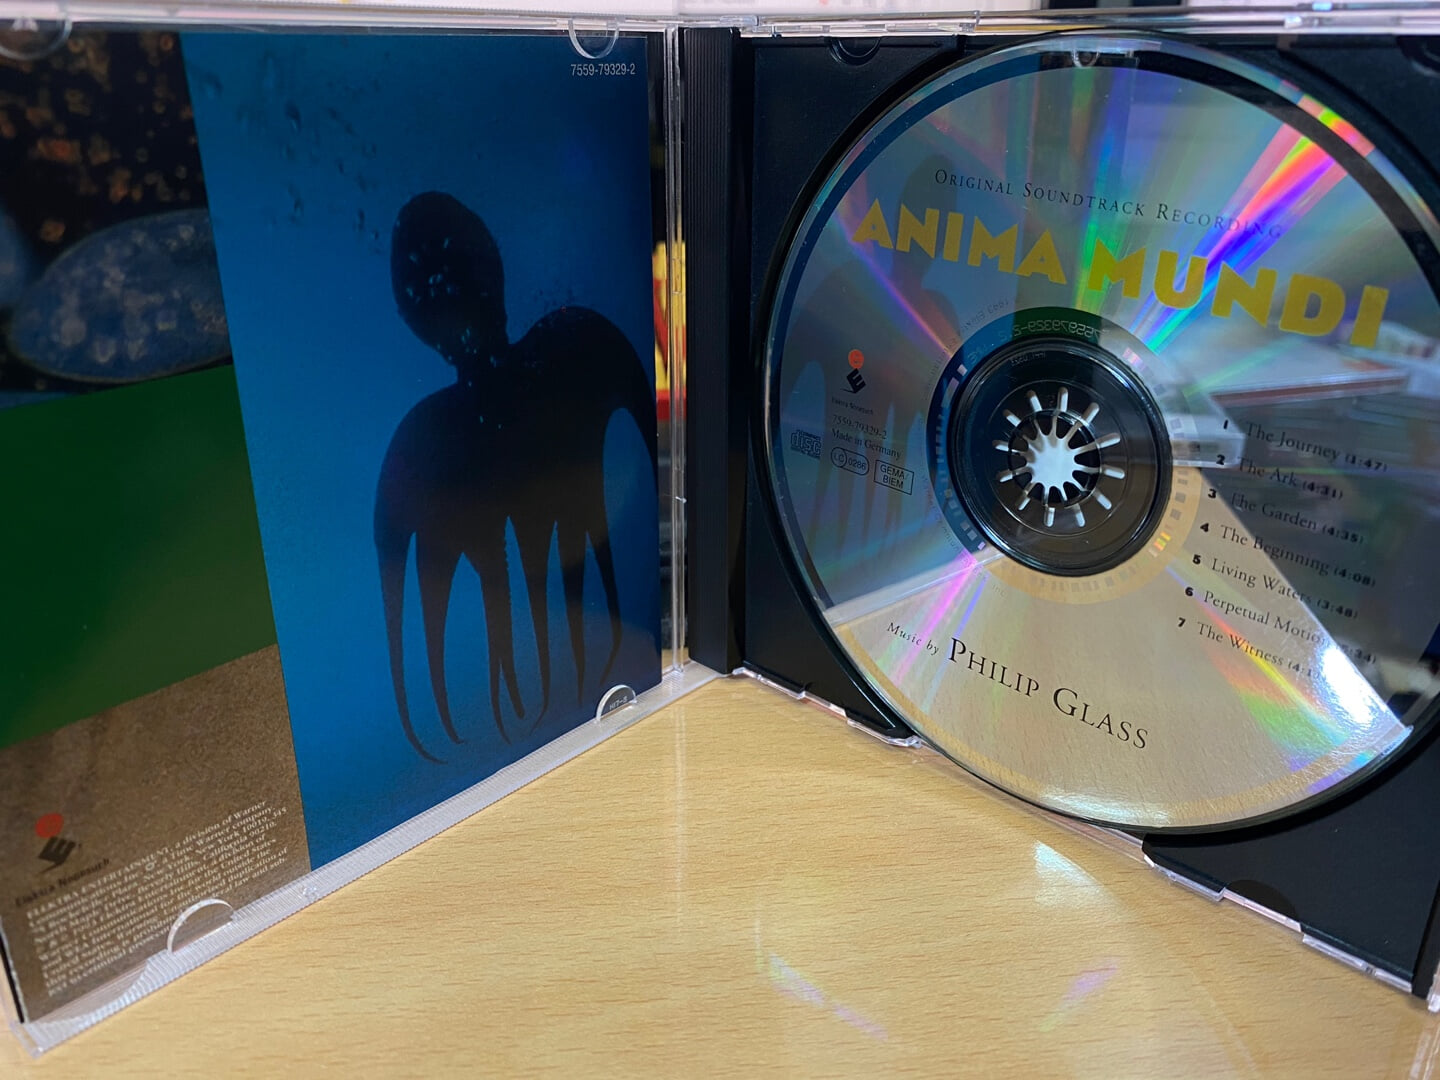 아니마 문디 - Anima Mundi OST (Philip Glass) [독일발매]